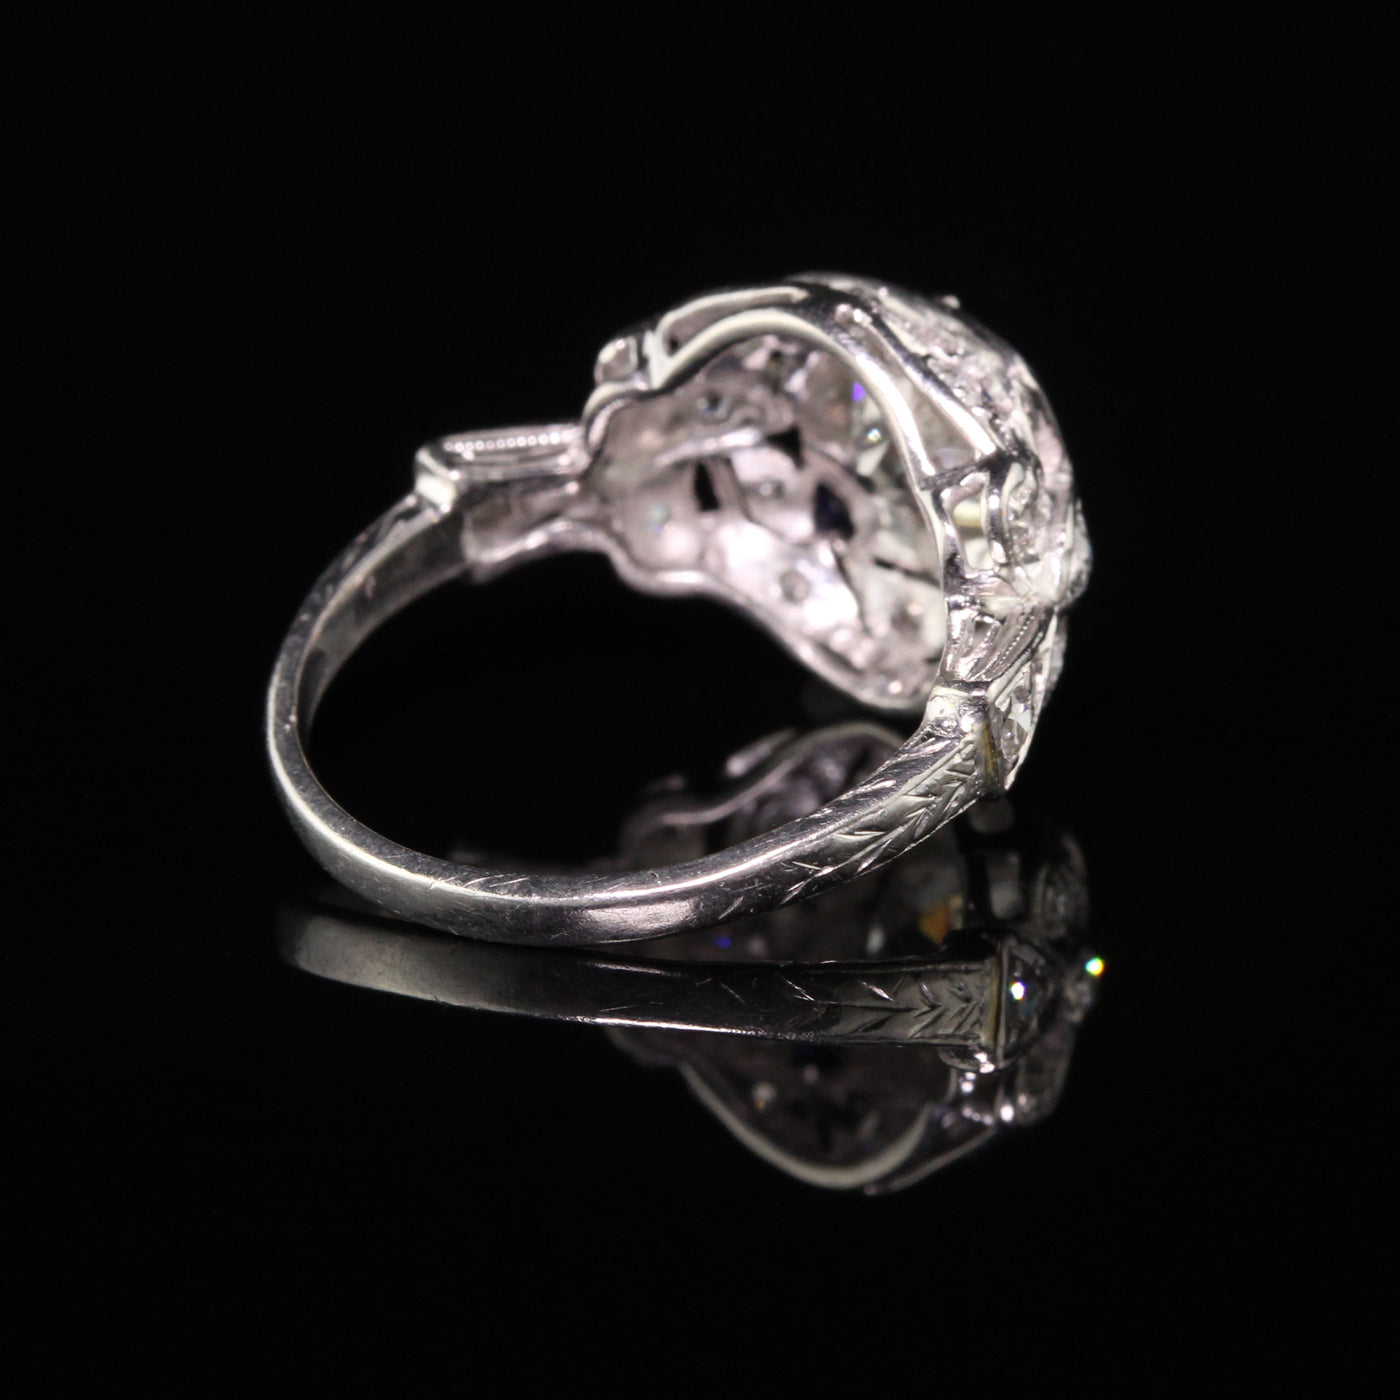 Antique Art Deco Platinum Old European Diamond Engagement Ring